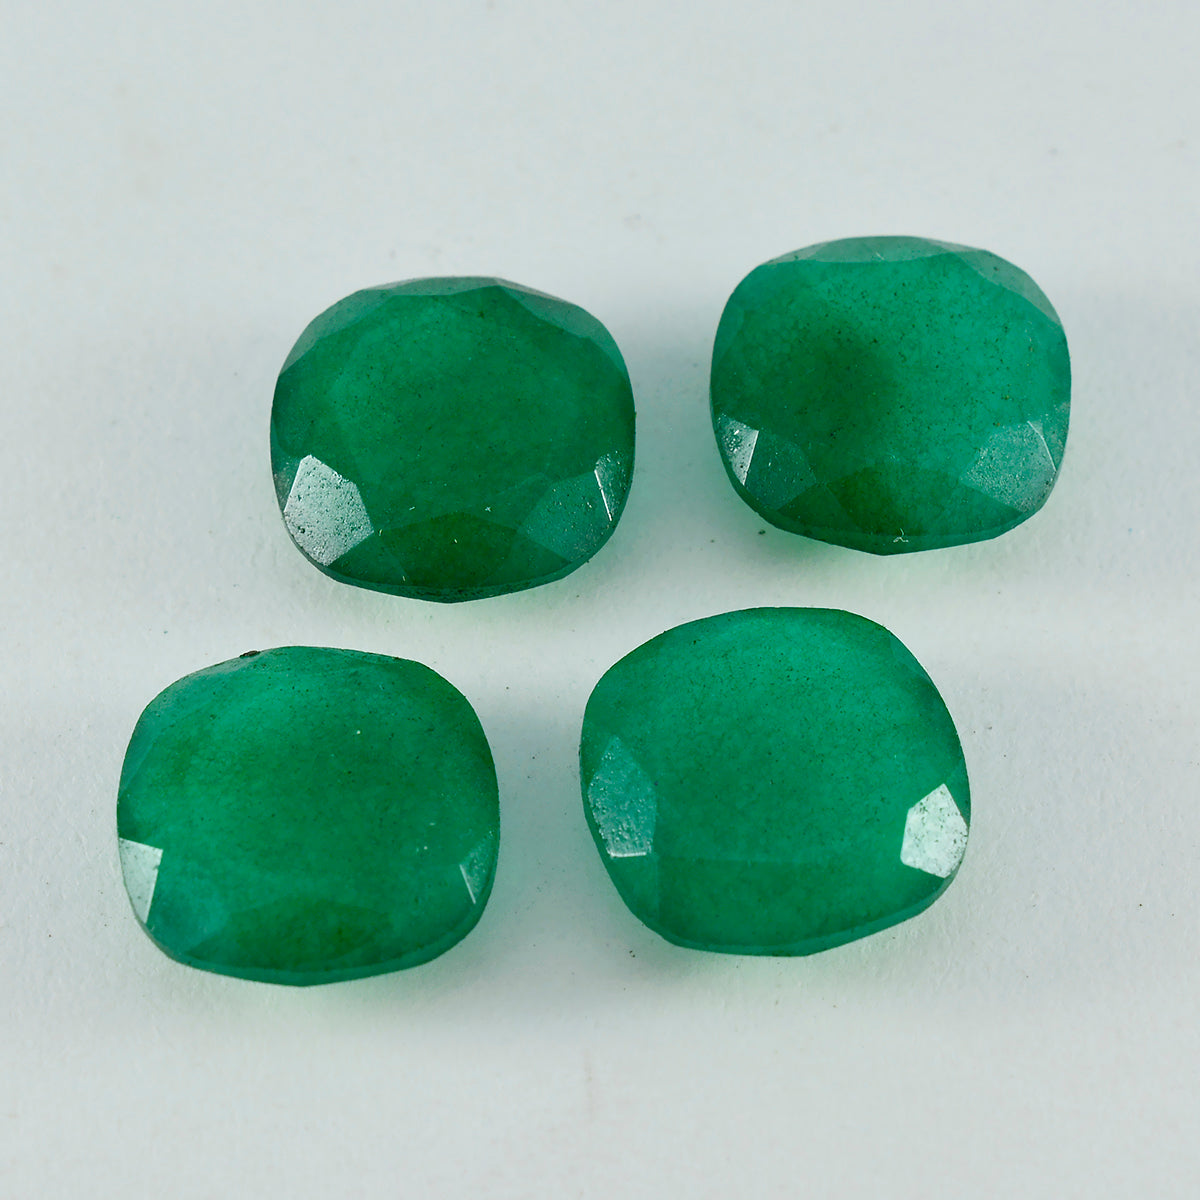 riyogems, 1 шт., настоящая зеленая яшма, граненая 12x12 мм, в форме подушки, красивые качественные свободные драгоценные камни